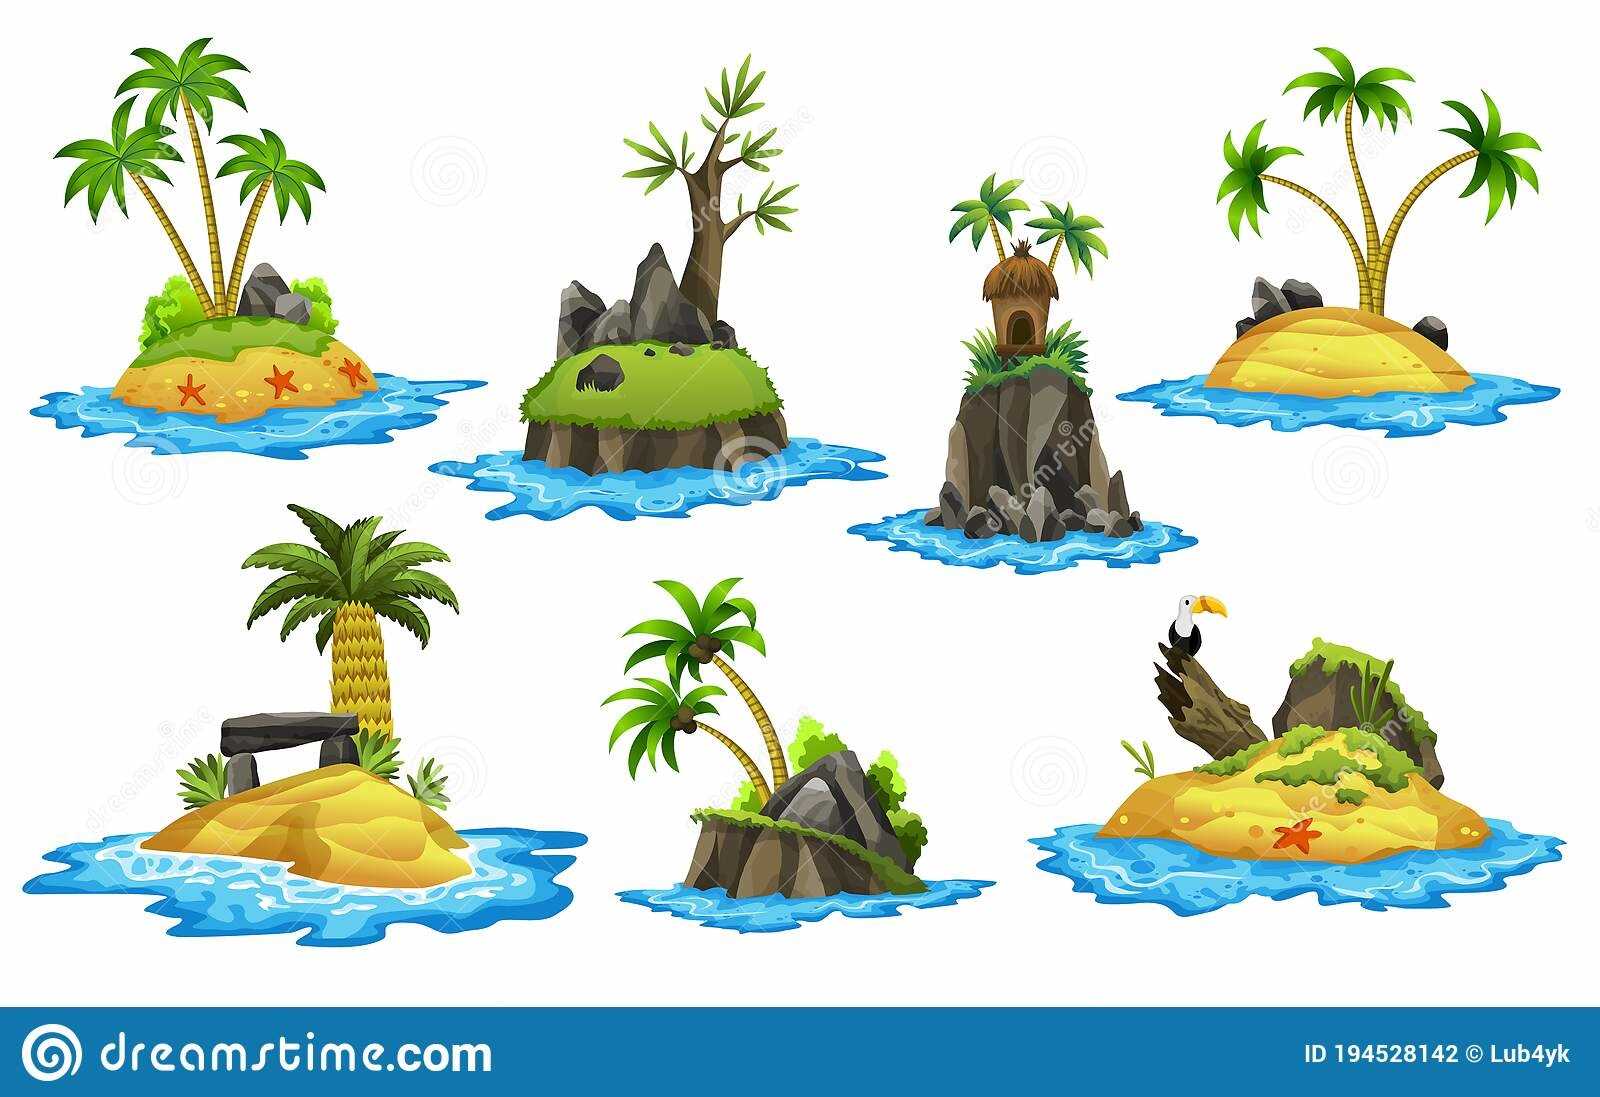 Картинки тропических островов 13